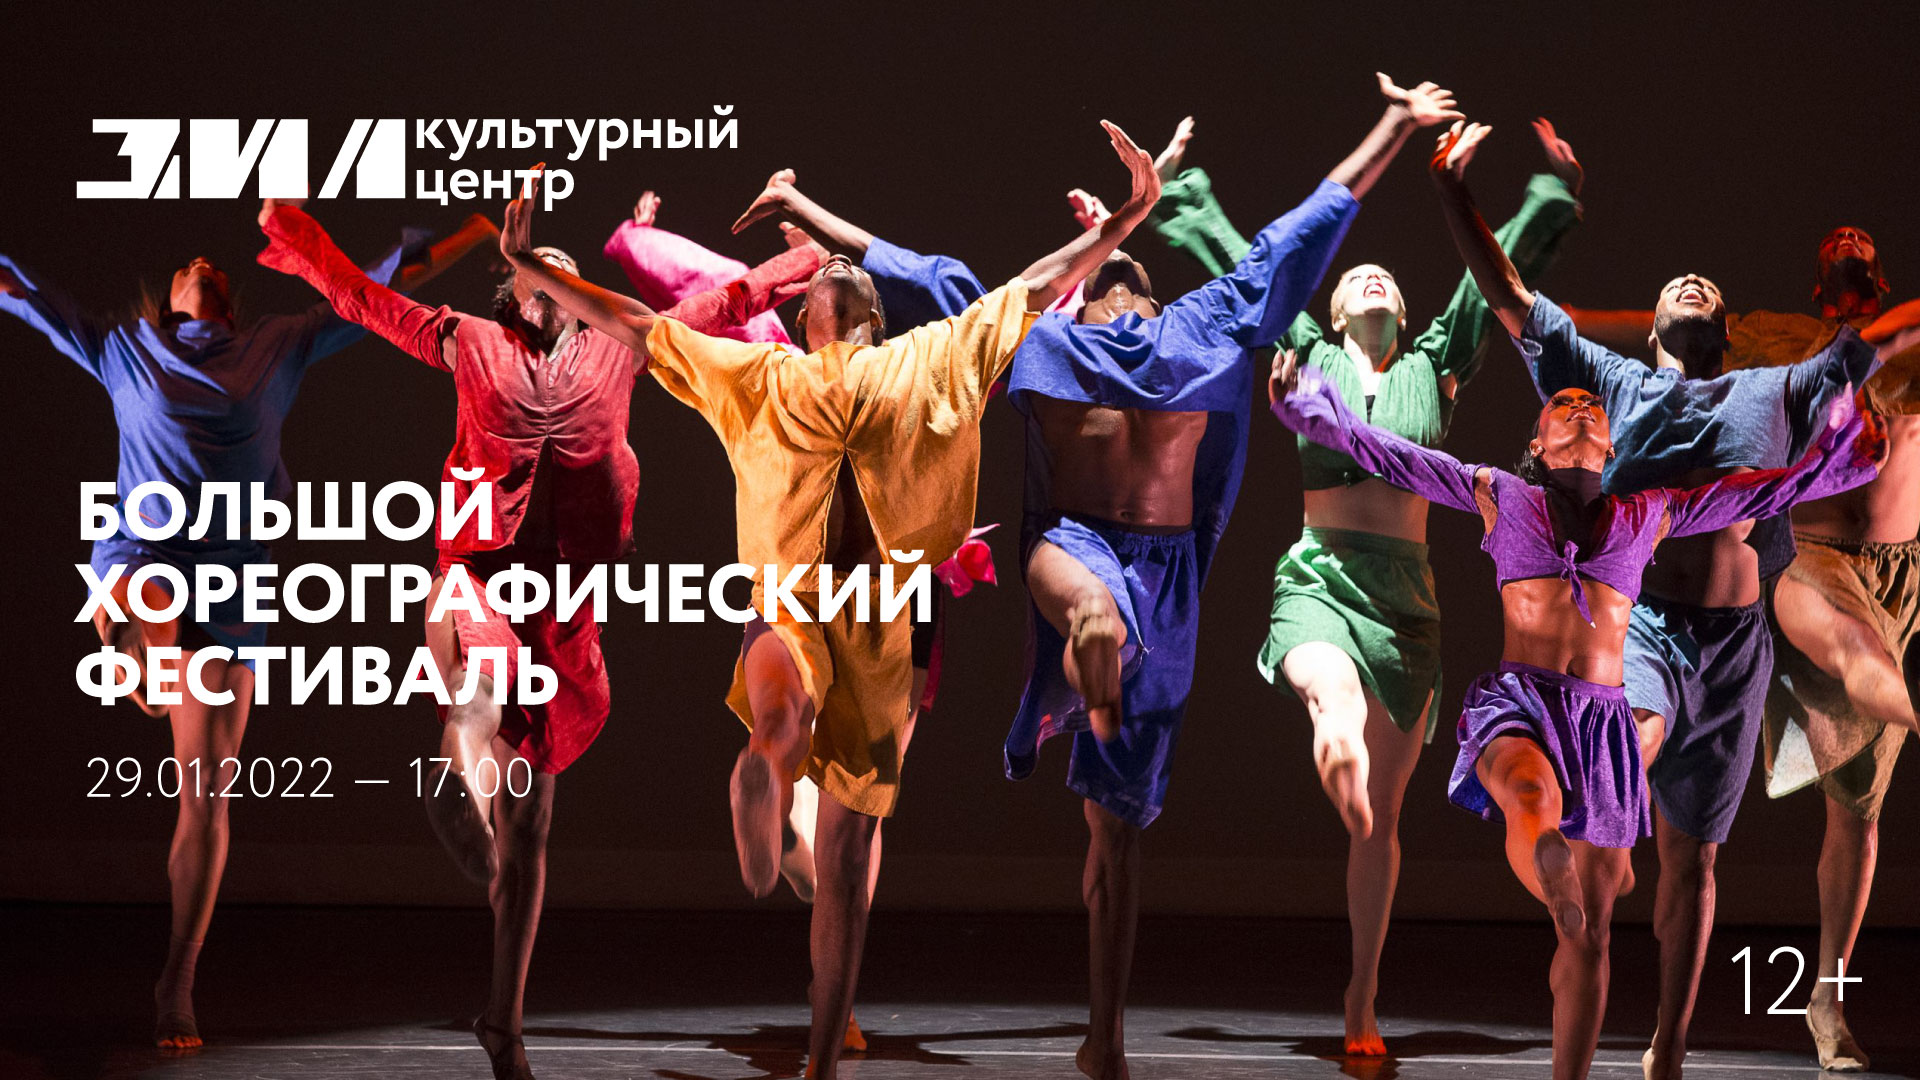 Большой хореографический фестиваль — Культурный центр ЗИЛ (Москва)